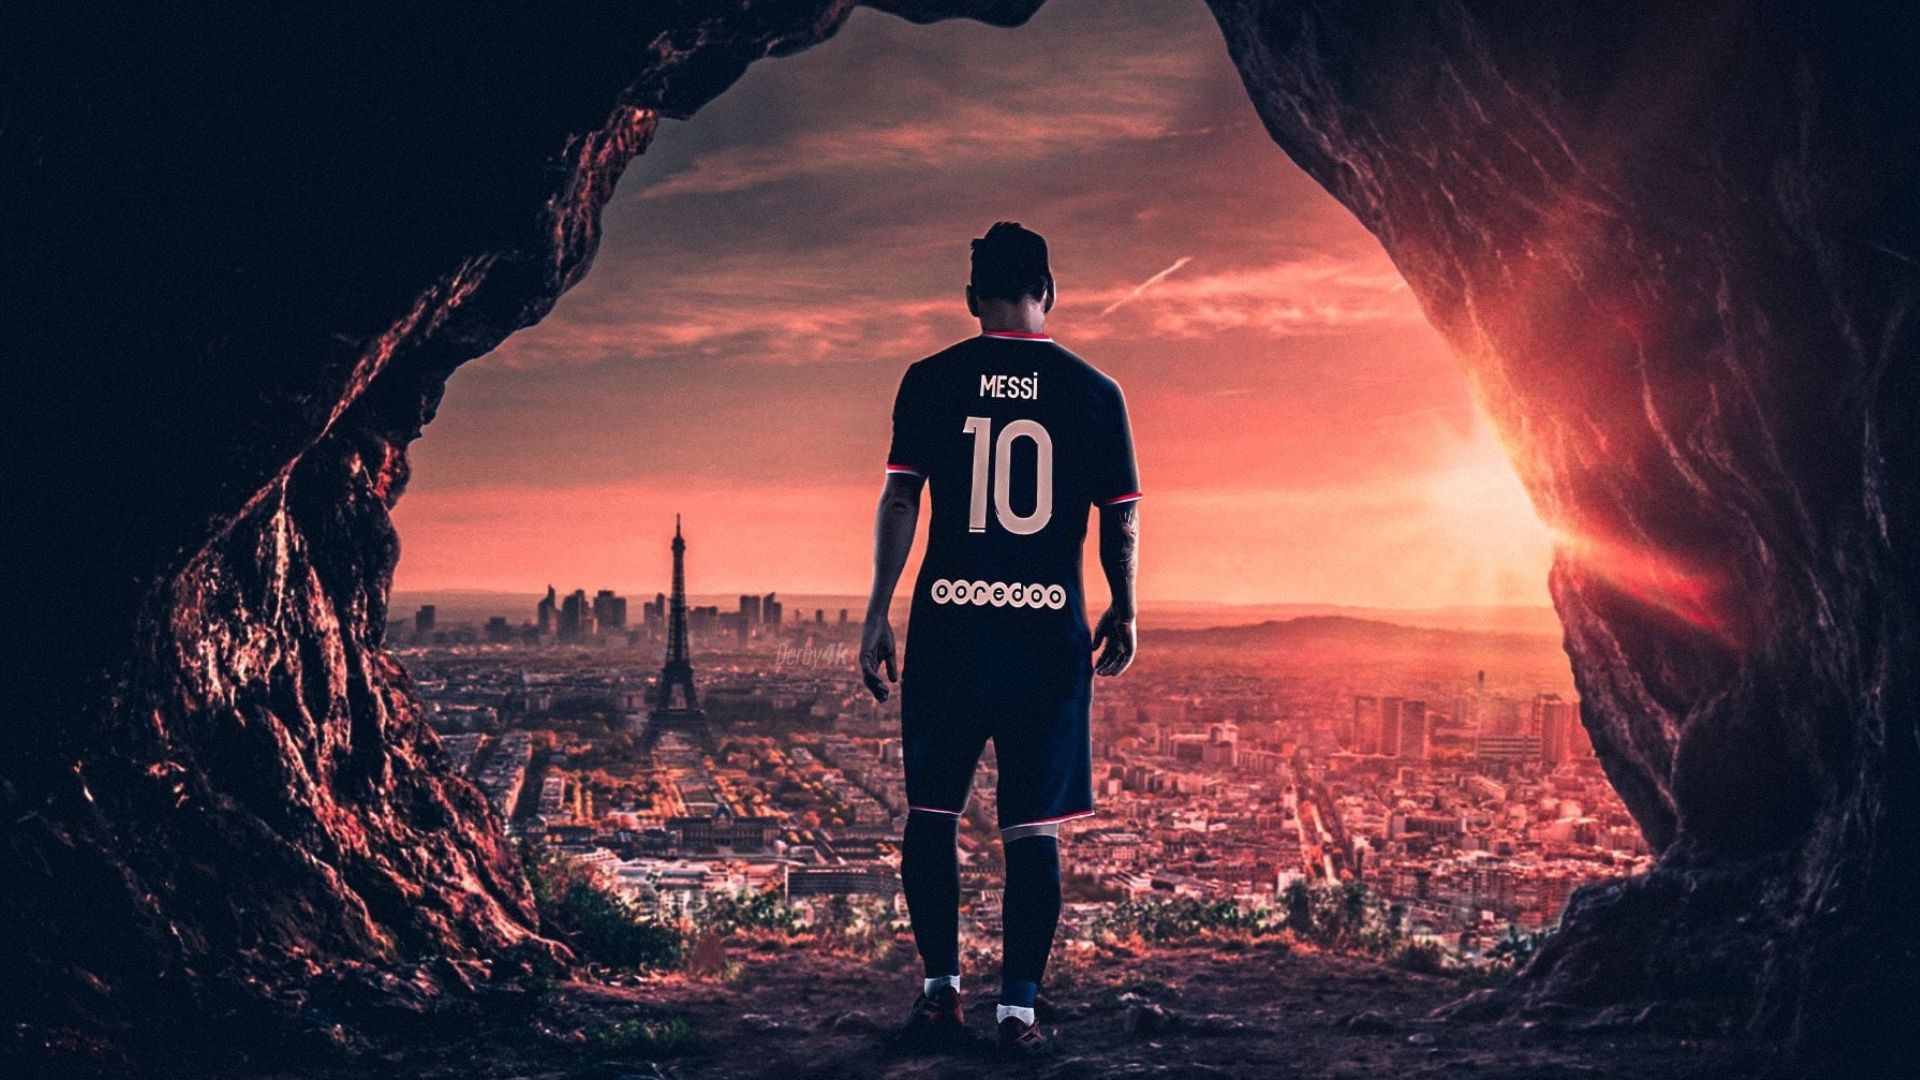 PSG 2022 – một trong những đội bóng danh tiếng nhất trên thế giới với những cầu thủ tài năng sáng giá. Hãy cùng xem những hình ảnh tuyệt đẹp về đội bóng Paris Saint-Germain và đón nhận những cảm xúc thăng hoa trong mỗi trận đấu của đội bóng này.